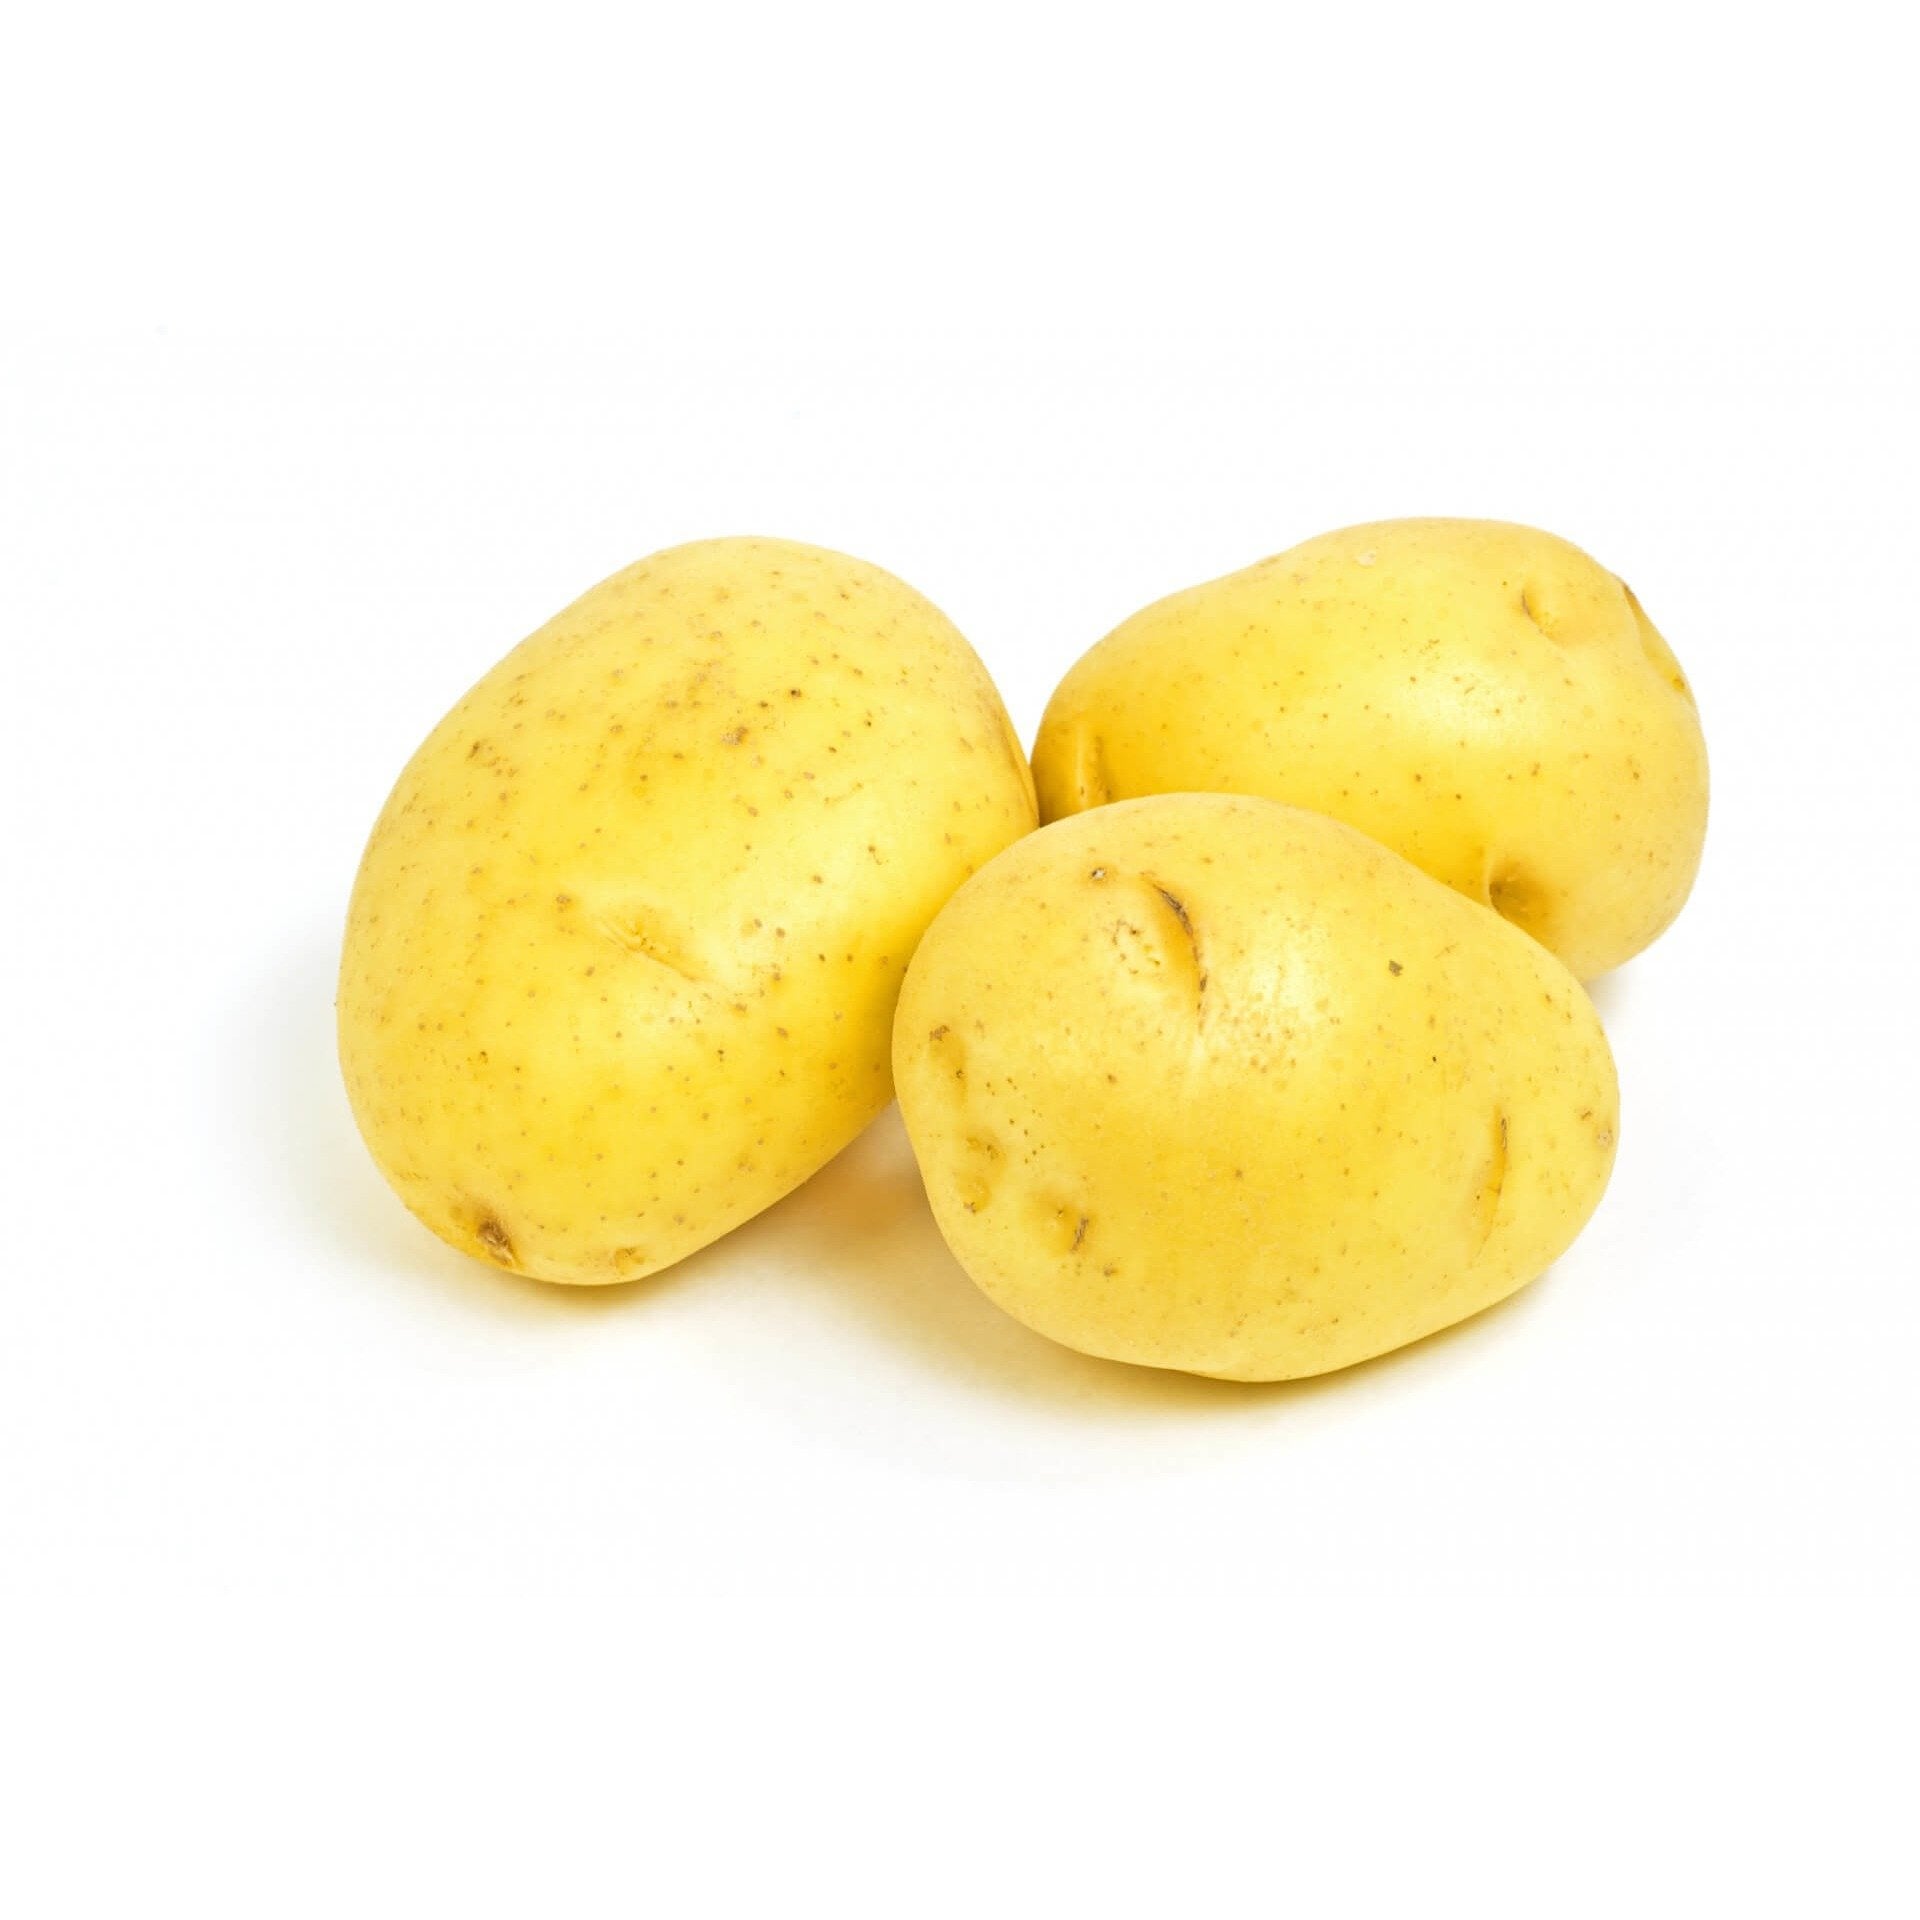 Yukon/Yellow Potato US/BC (per pound)